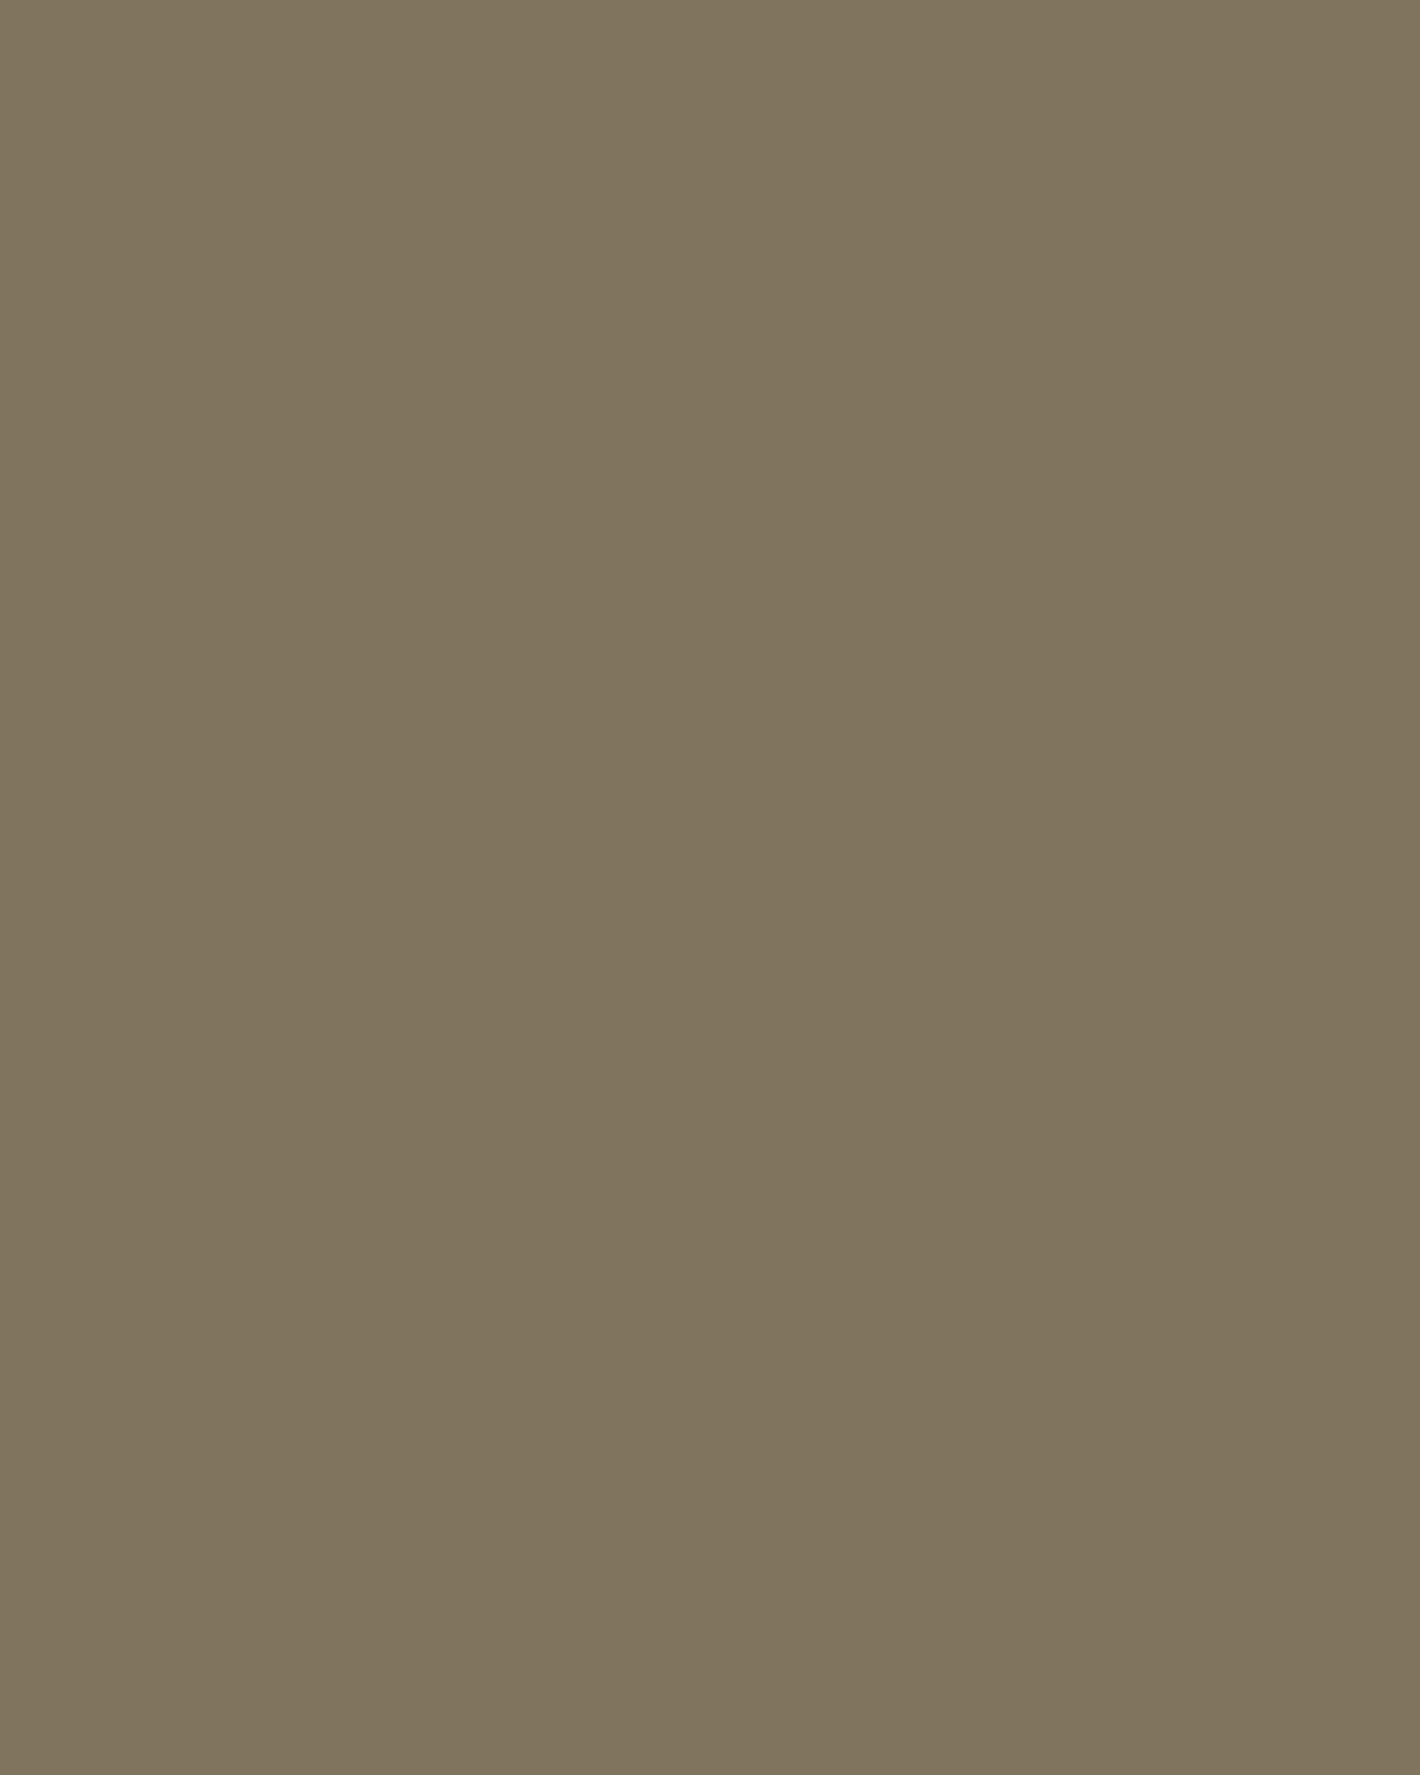 Елена Поленова. Рабочий момент (фрагмент). Этюд. 1881–1883. Национальный музей Республики Бурятия, Улан-Удэ